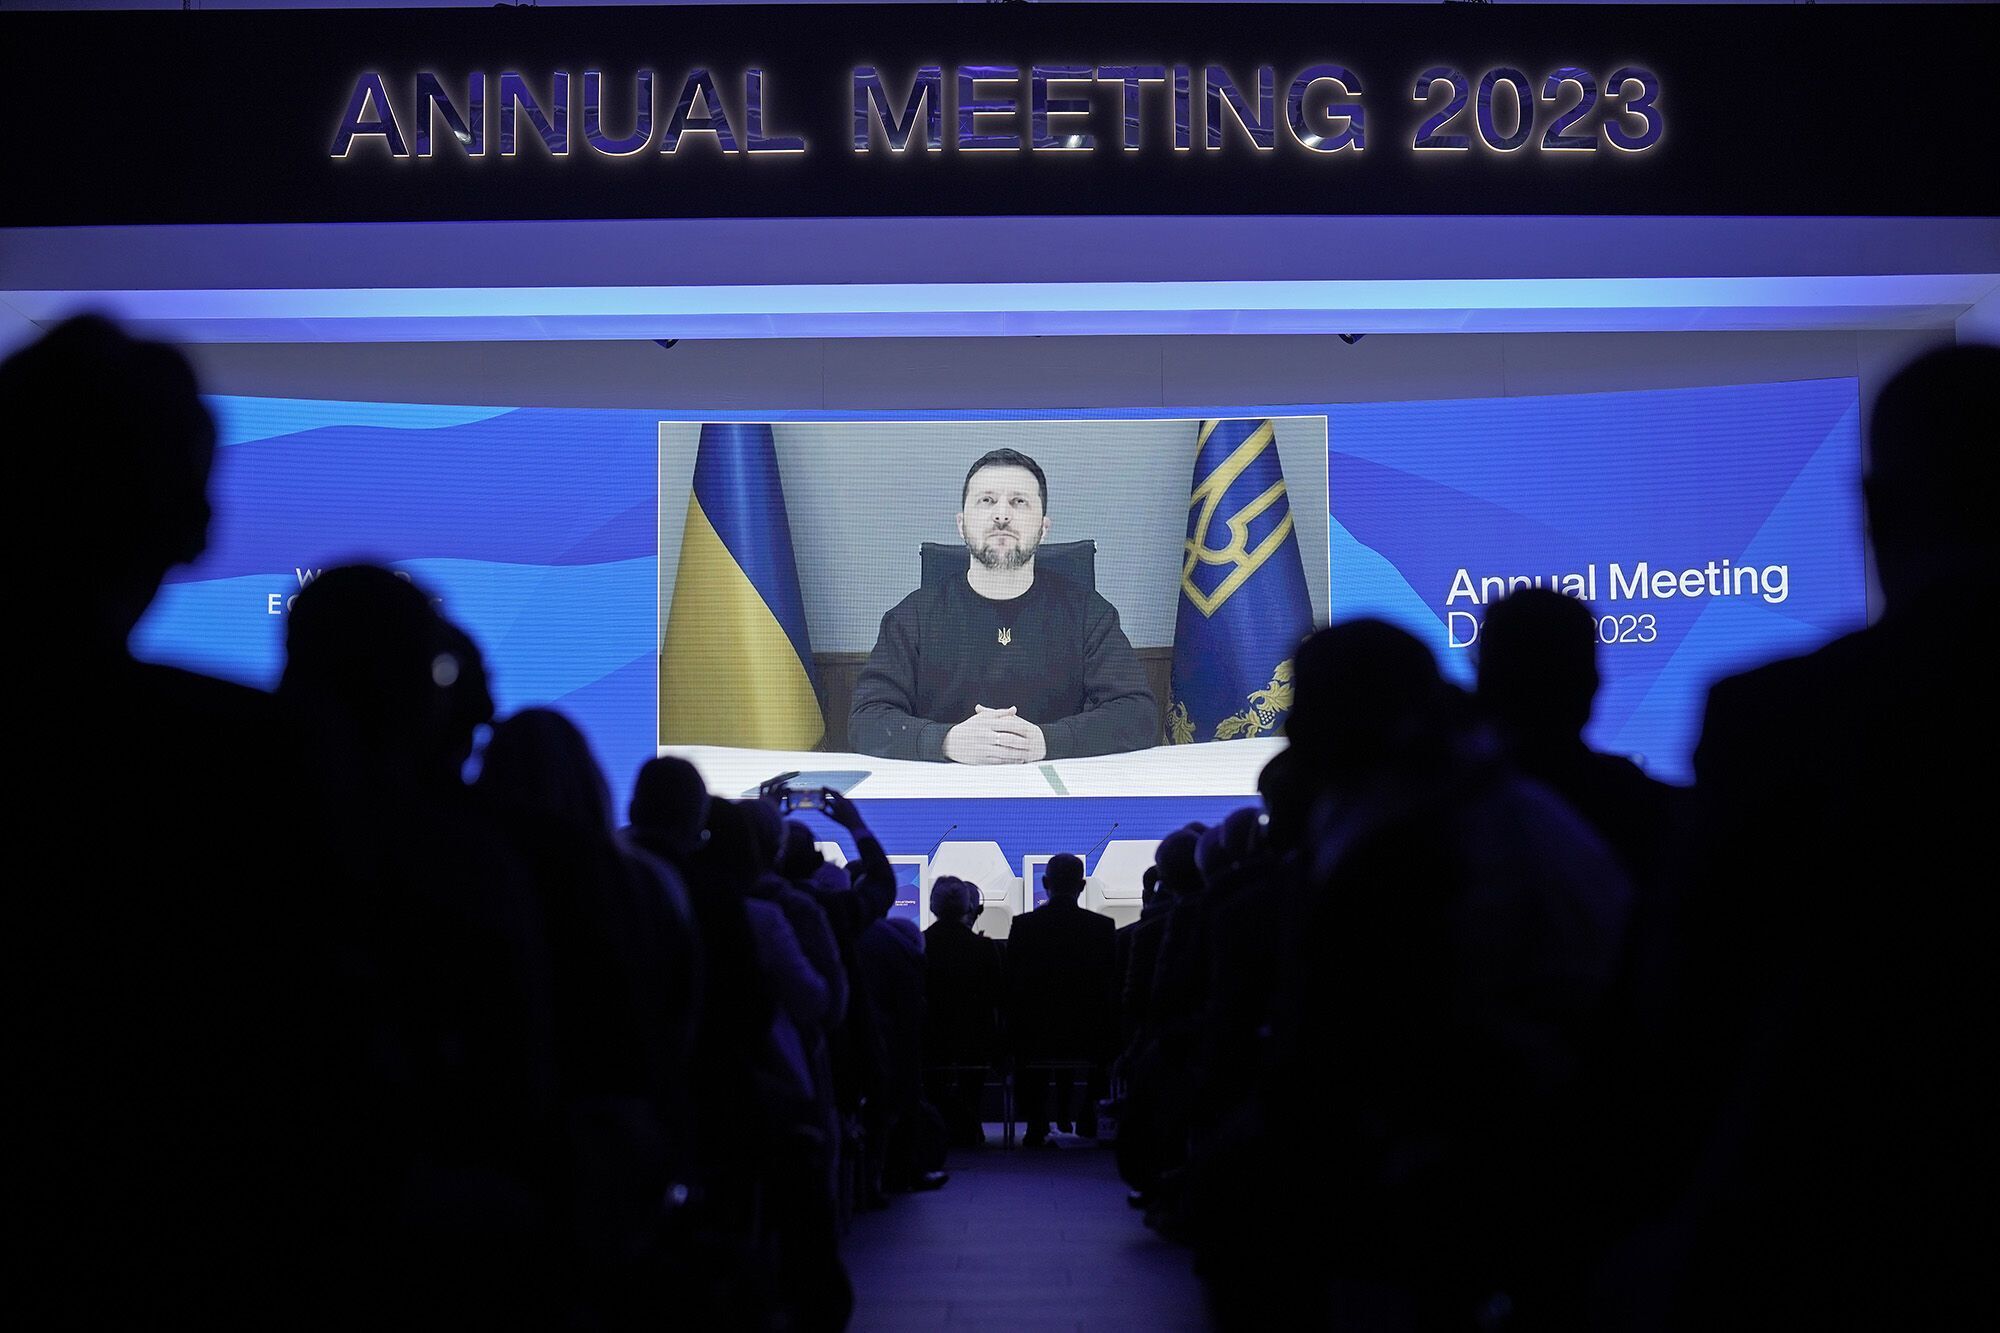 "Світ не повинен вагатися": Зеленський у виступі до учасників Форуму в Давосі закликав допомогти Україні подолати агресора